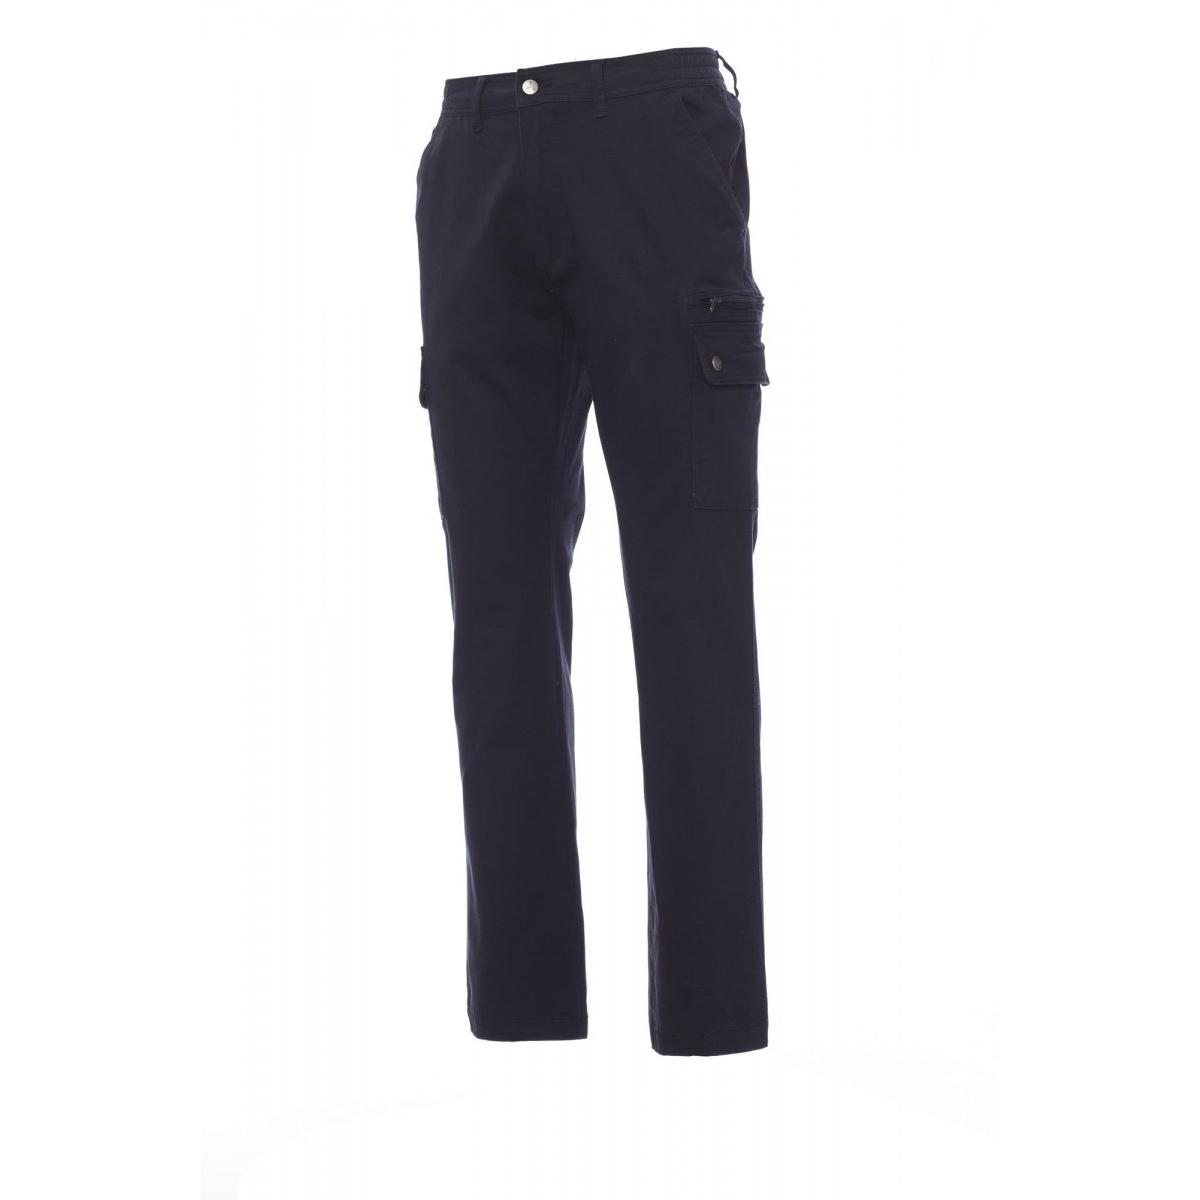 Pantalone PAYPER-FOREST STRETCH adatto per il benessere